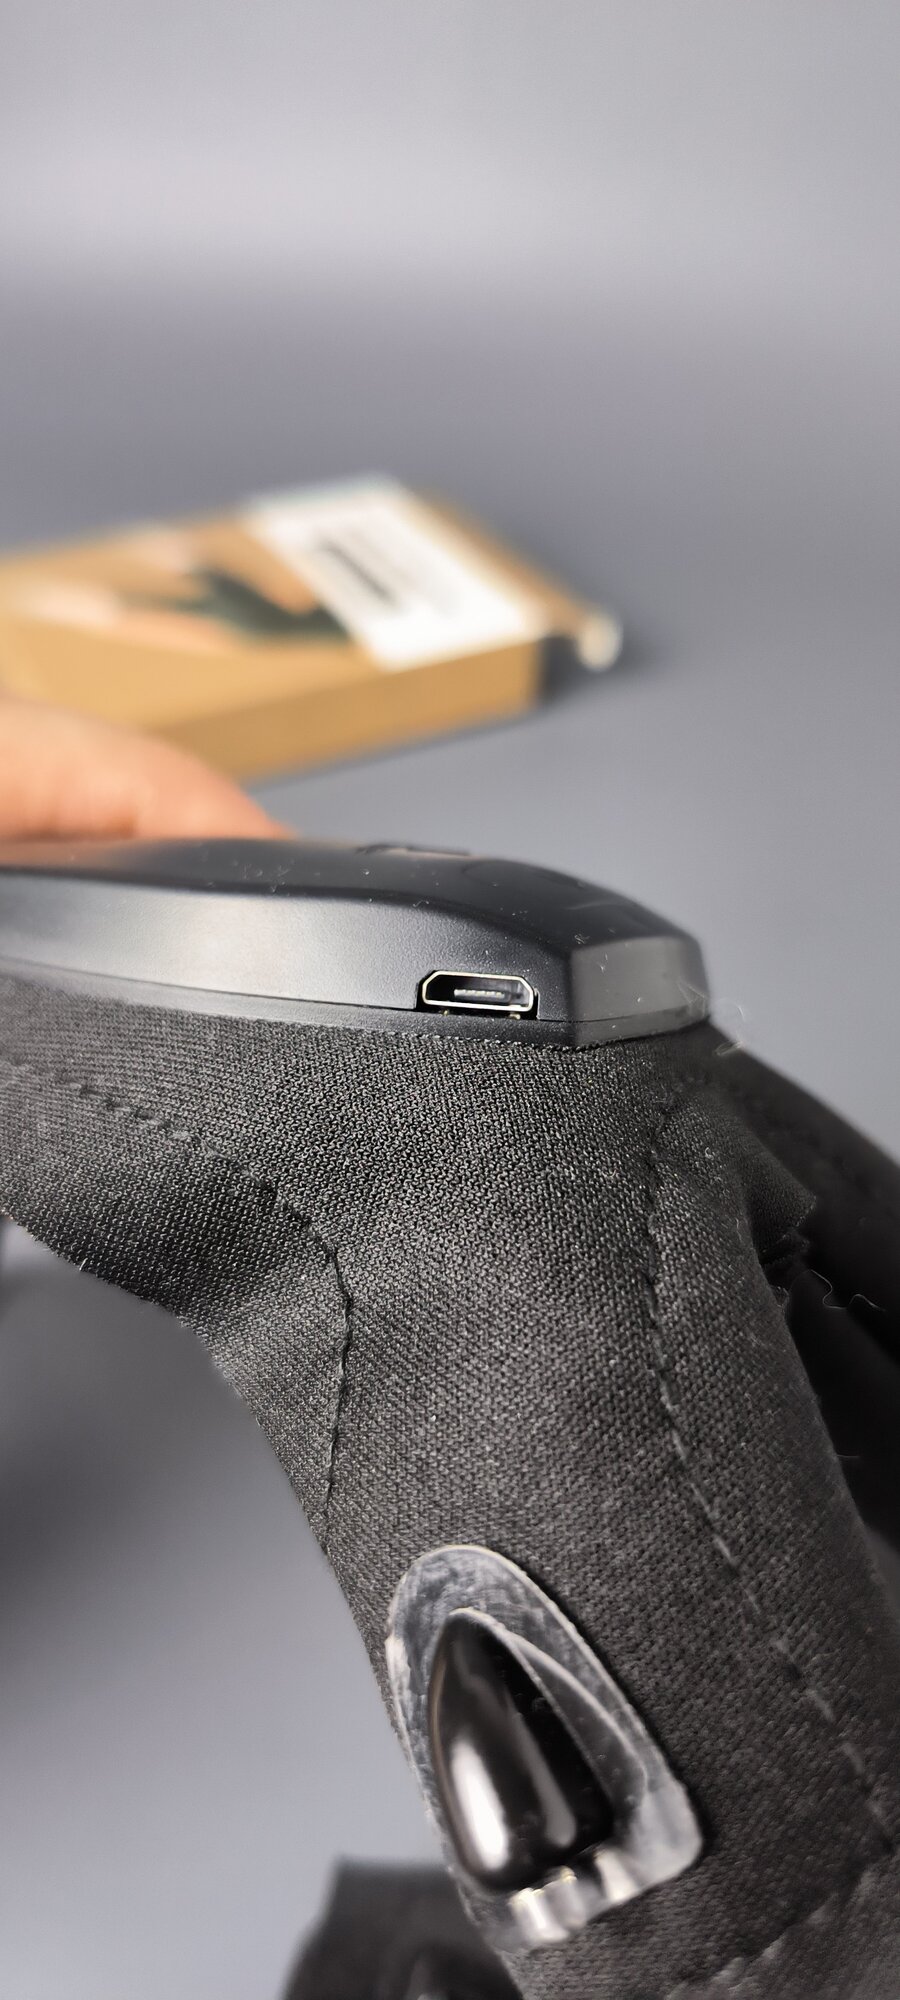 Фонарь-перчатка duwi со встроенной подсветкой, комплект 2 шт. Без бренда - фото №16